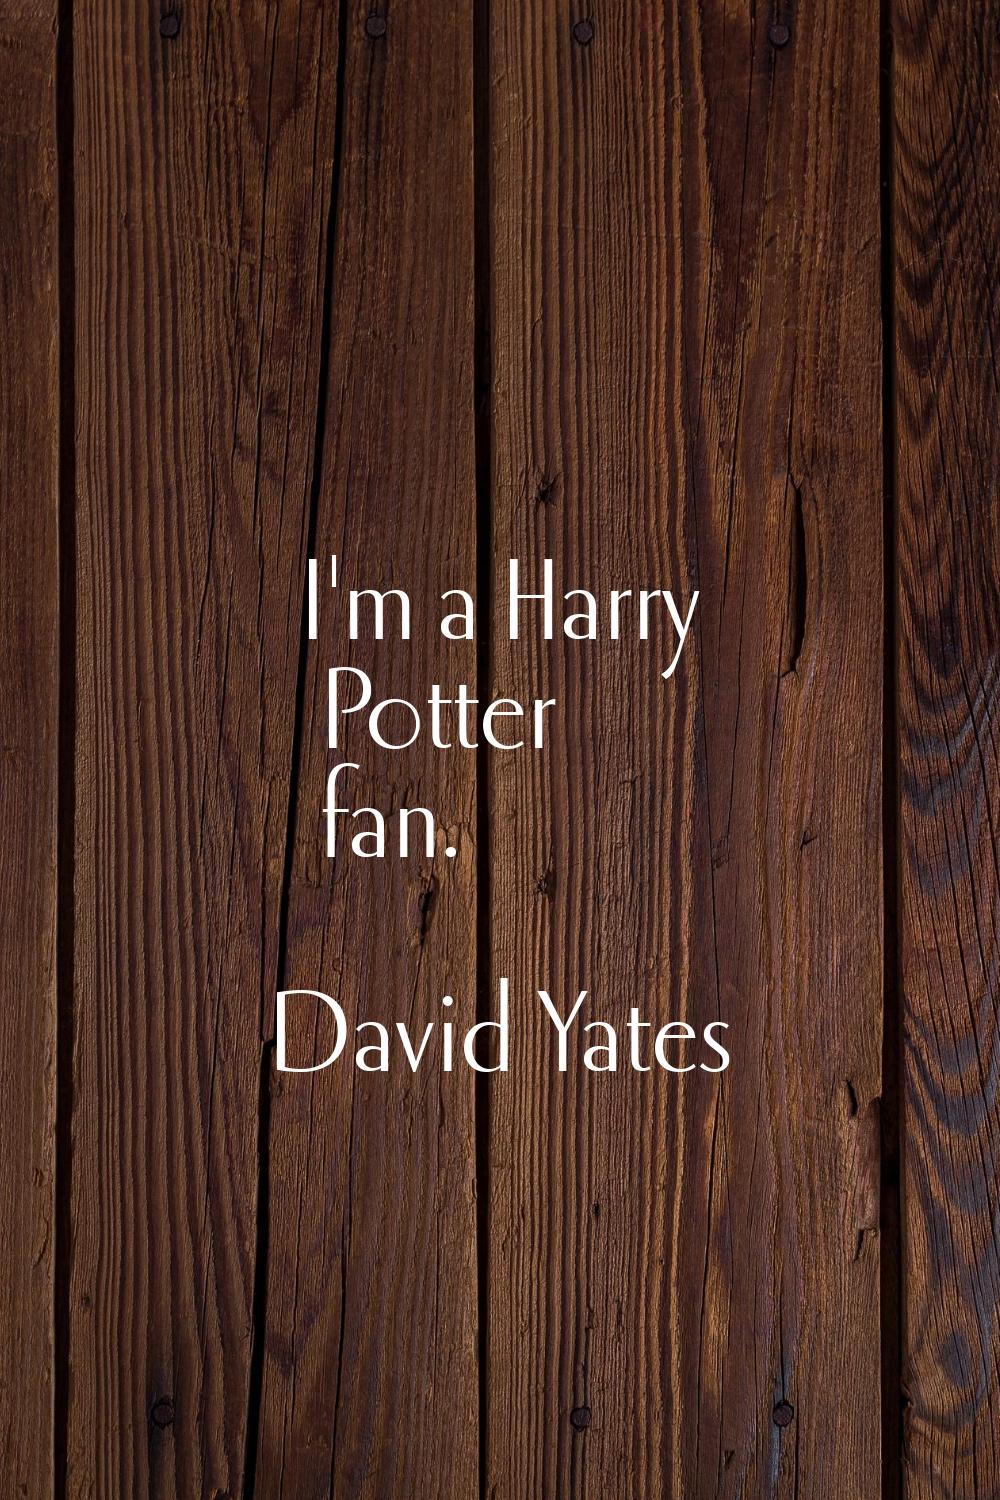 I'm a Harry Potter fan.